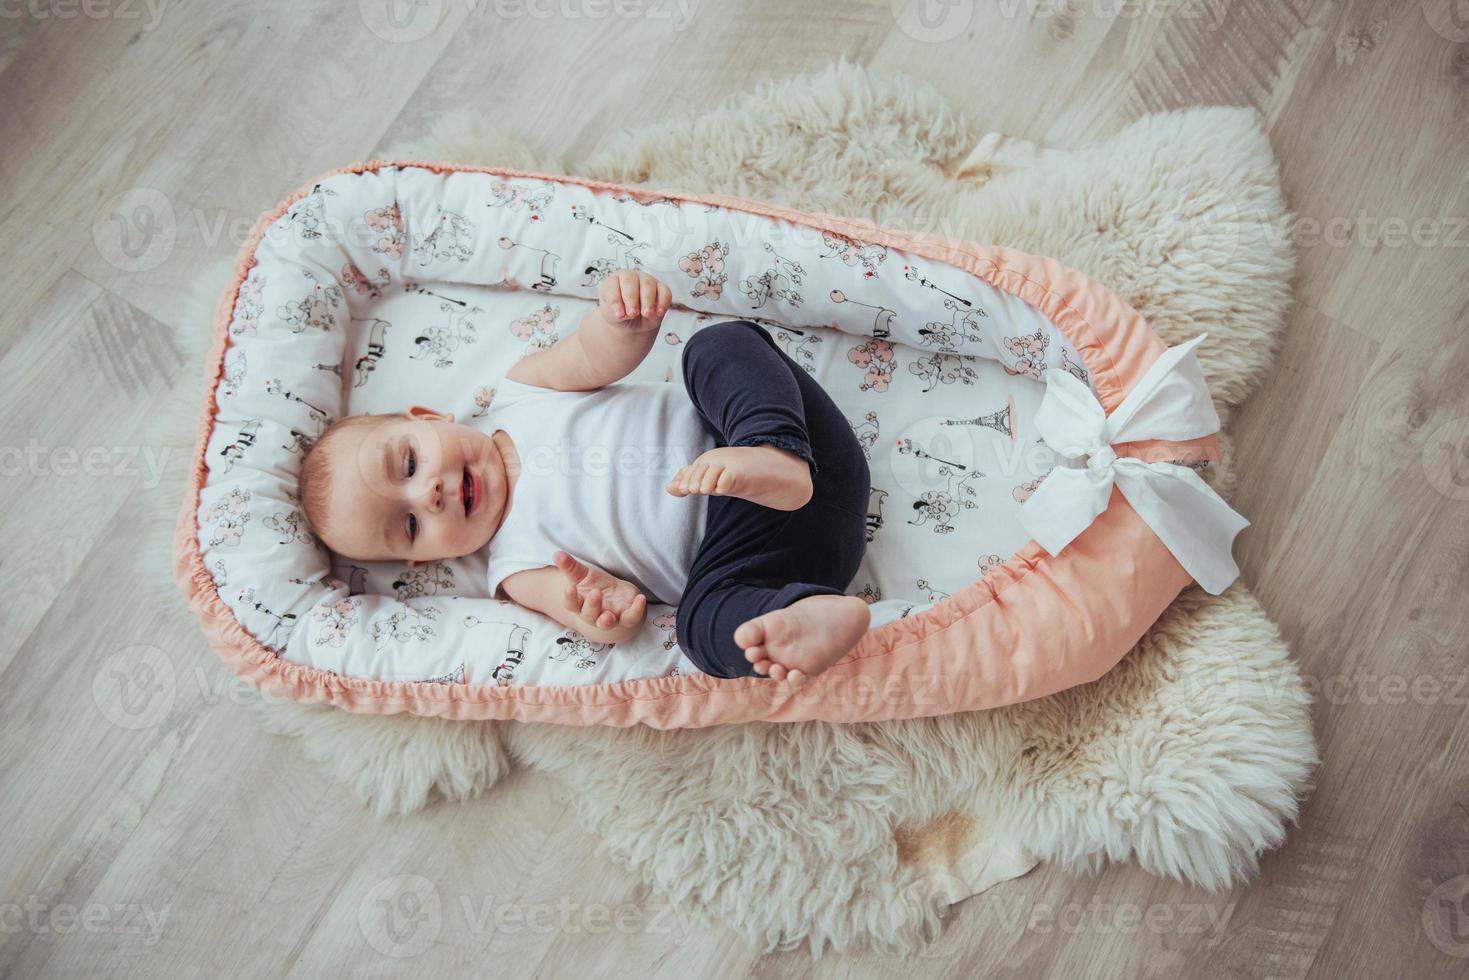 roupa de cama para crianças. o bebê dorme na cama. um bebê saudável logo após o nascimento. foto